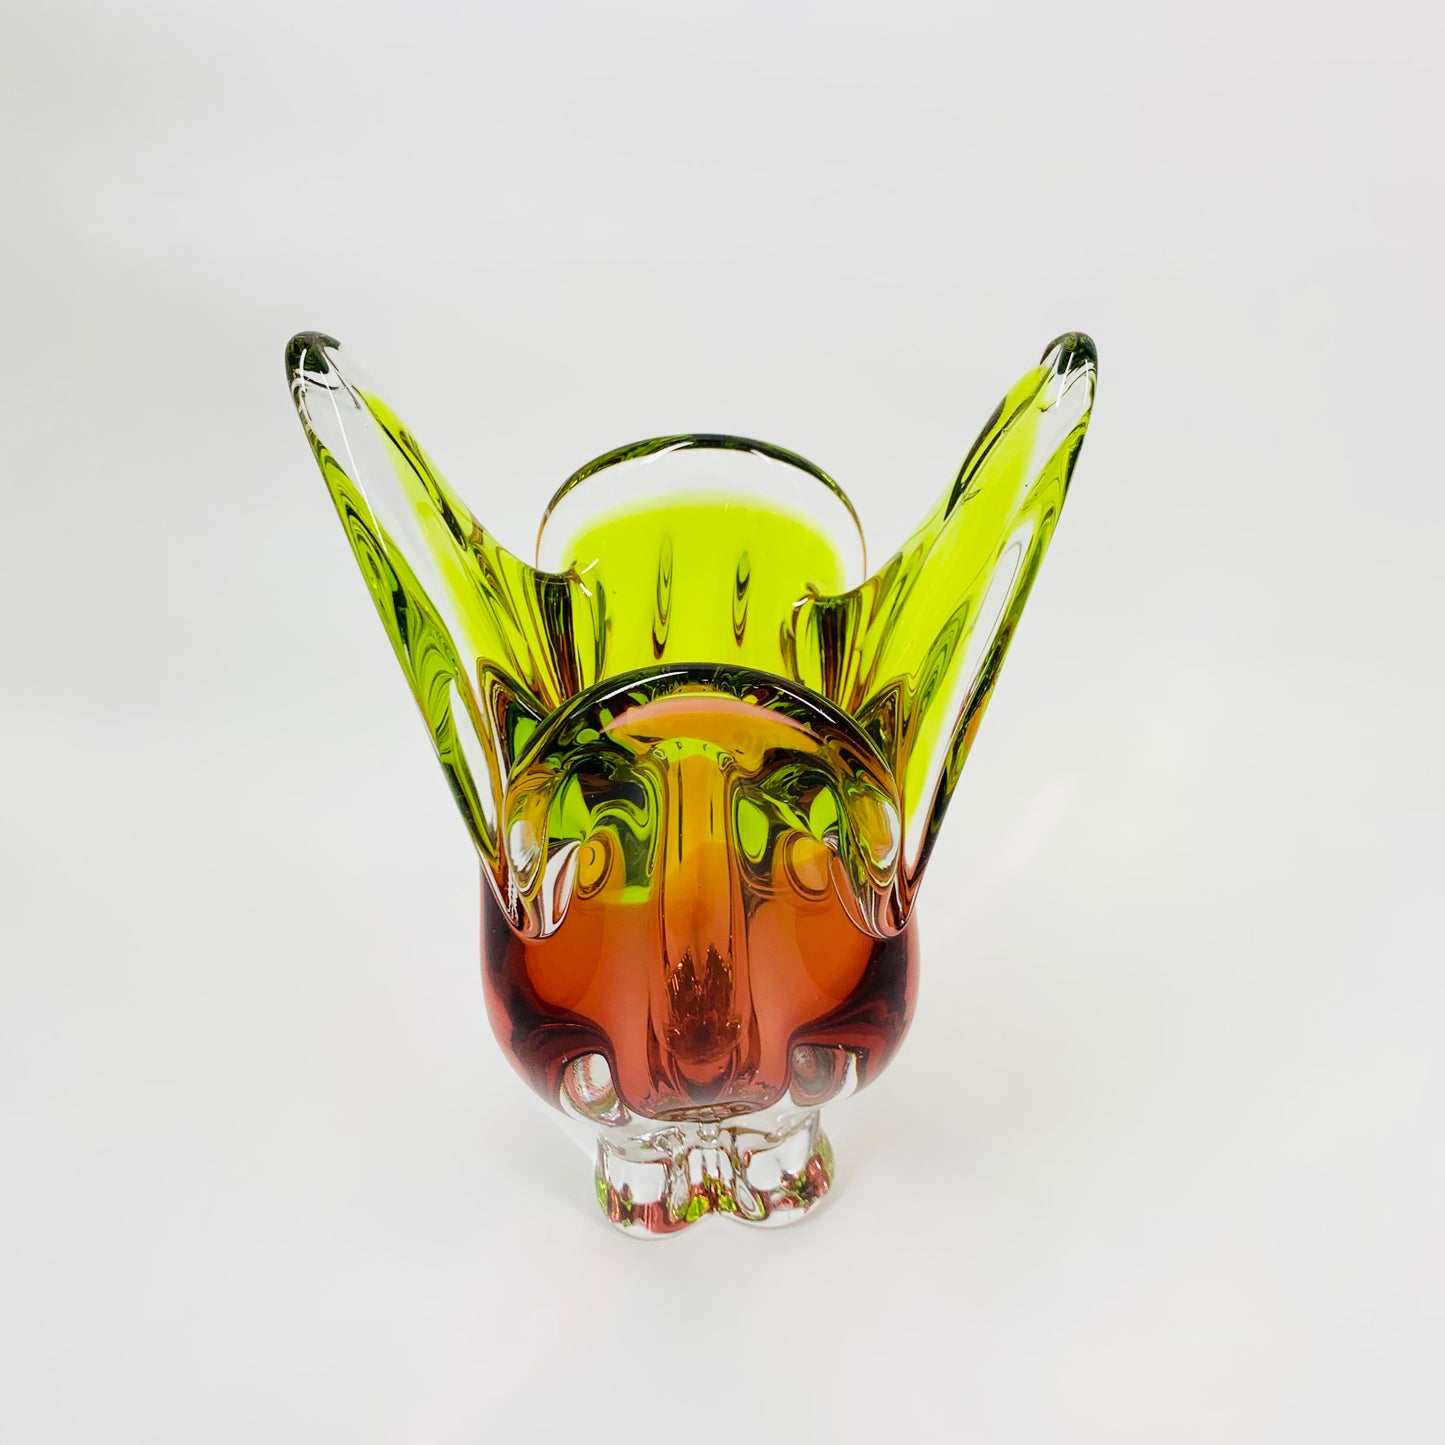 Extremely rare Midcentury Czech Chribska Glassworks lime green & amber orange sommerso glass Cat’s Head vase by Josef Hospodka